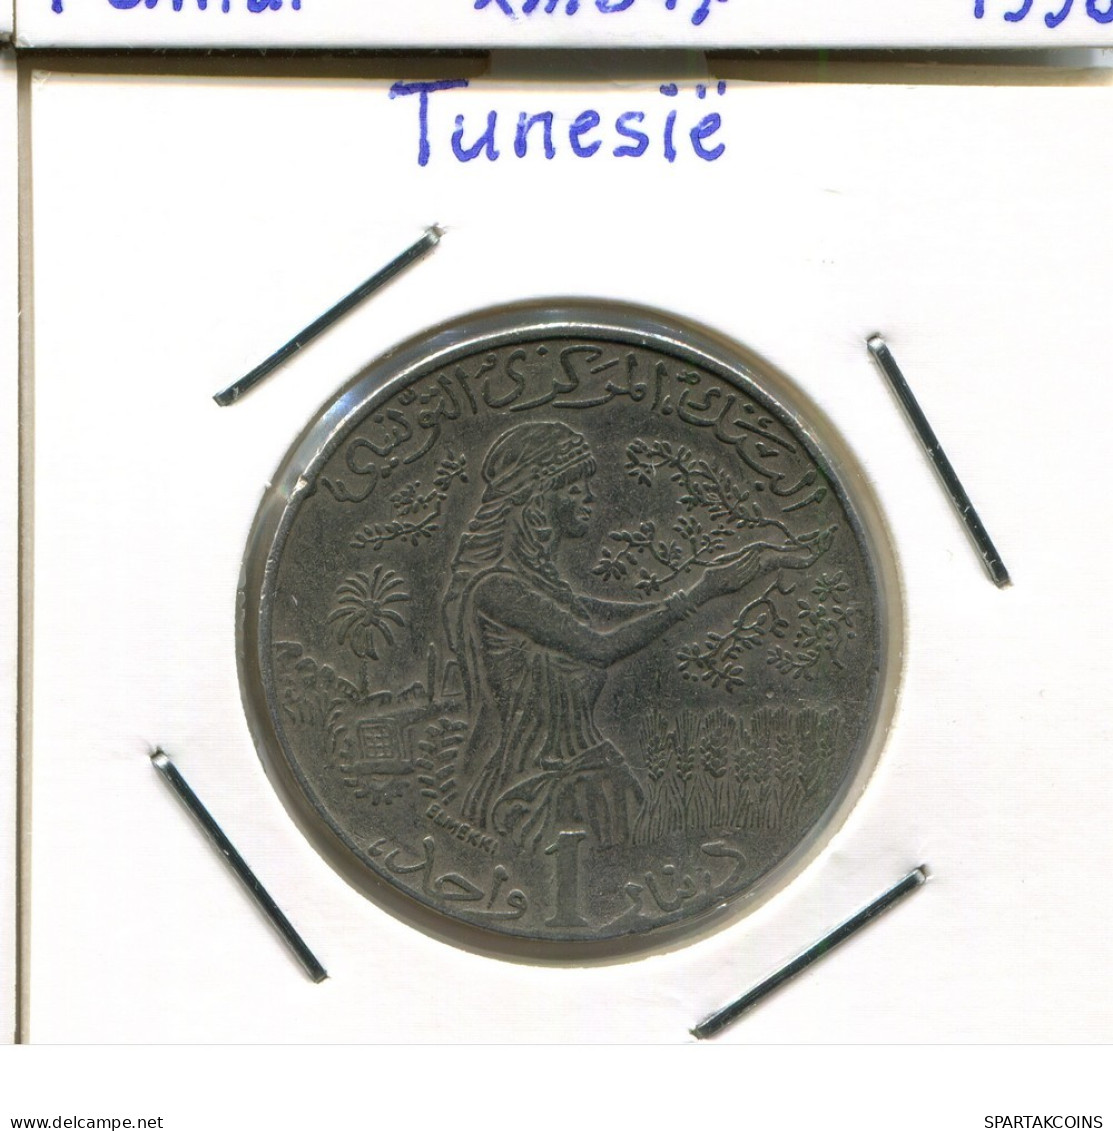 1 DINAR 1997 TÚNEZ TUNISIA Moneda #AP847.2.E.A - Tunisie